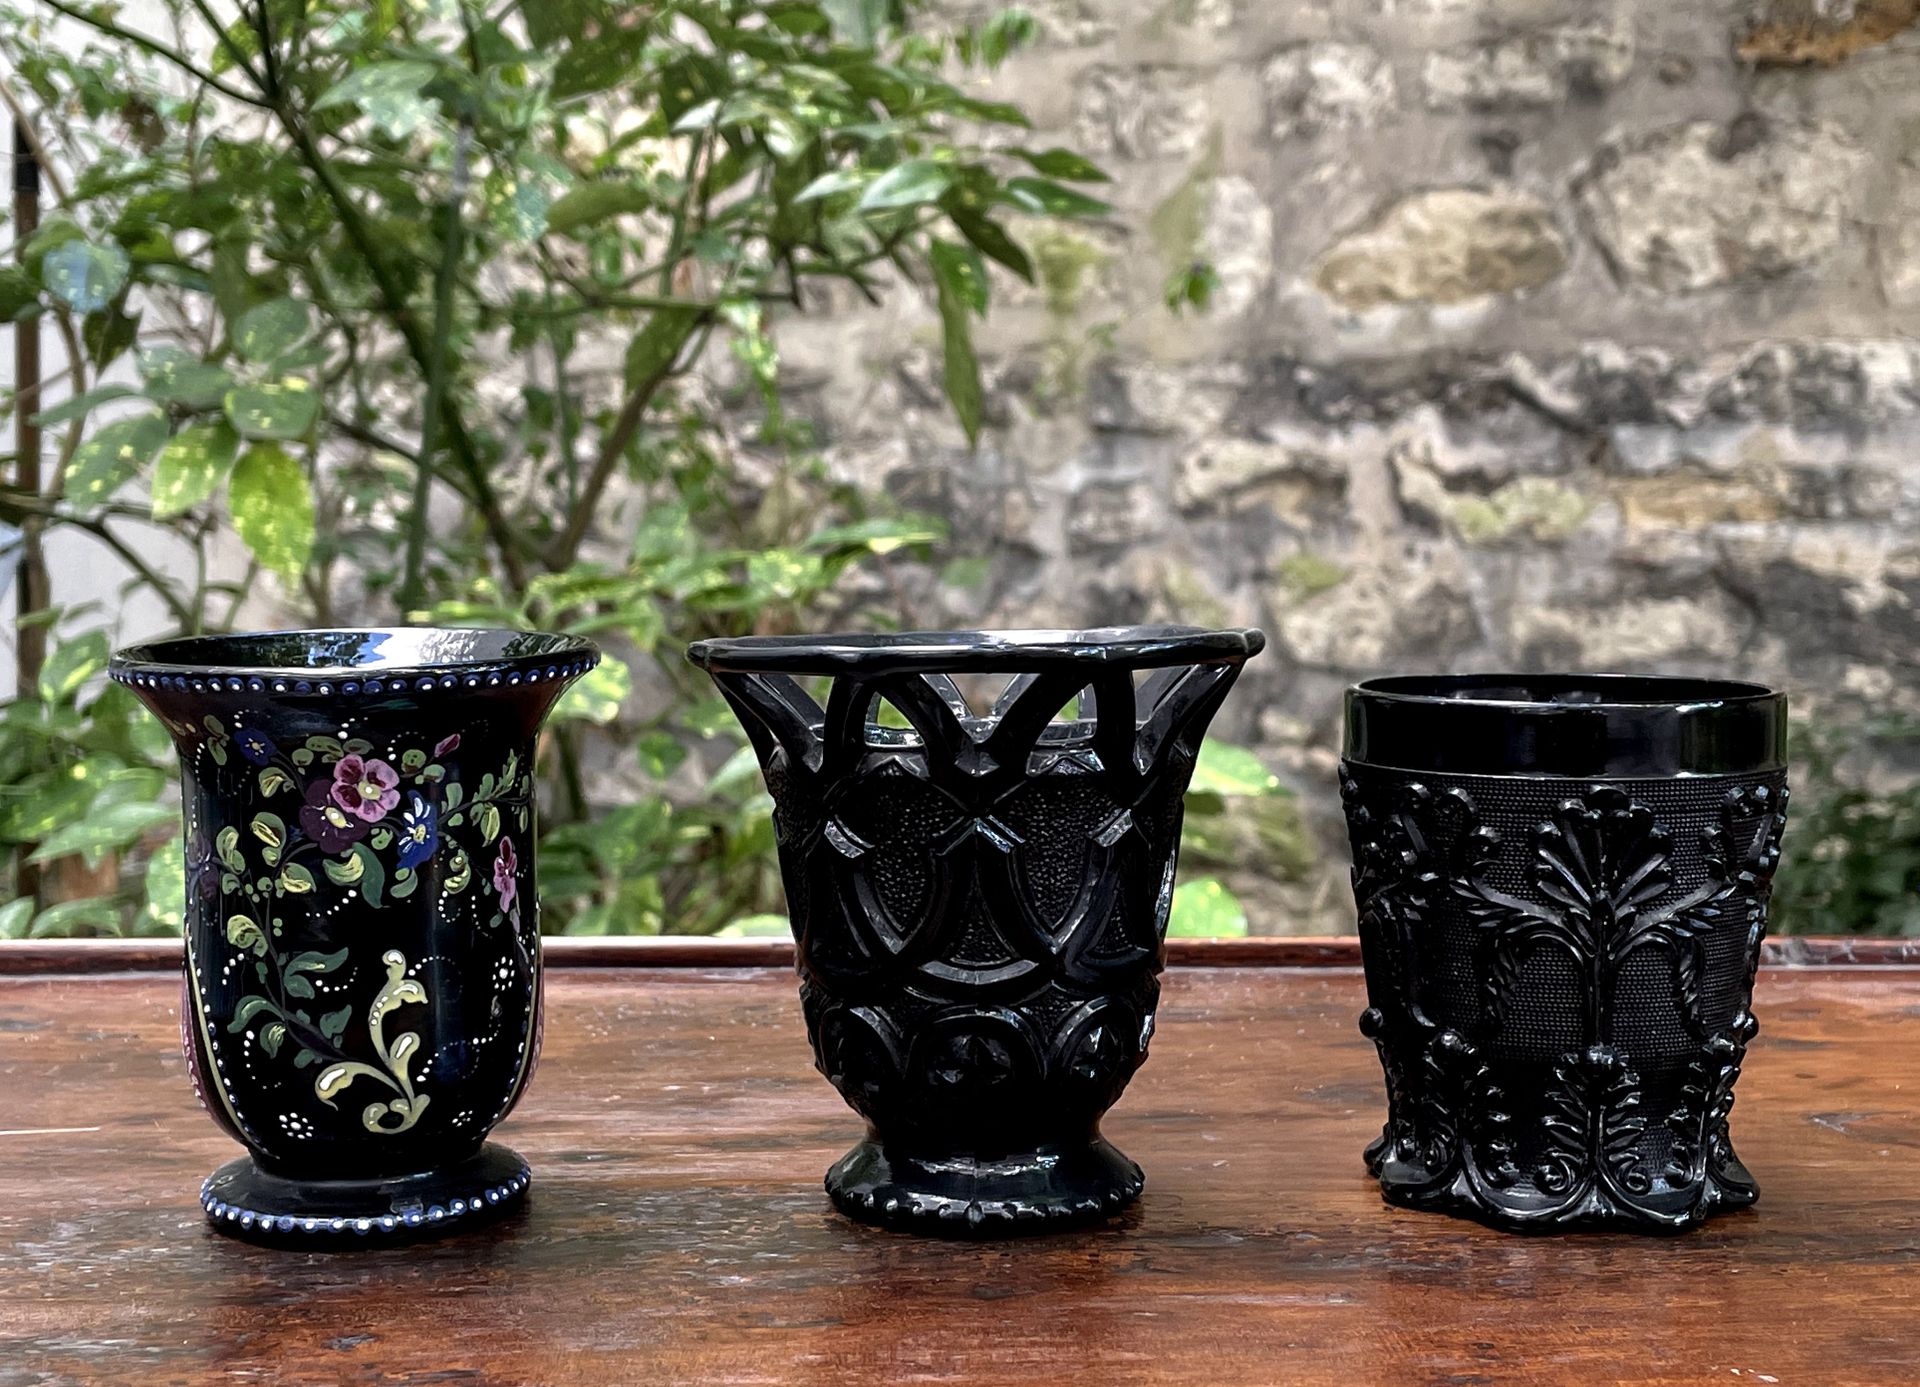 Null Conjunto de tres vasos de vidrio prensado negro. 

Una con flores pintadas,&hellip;